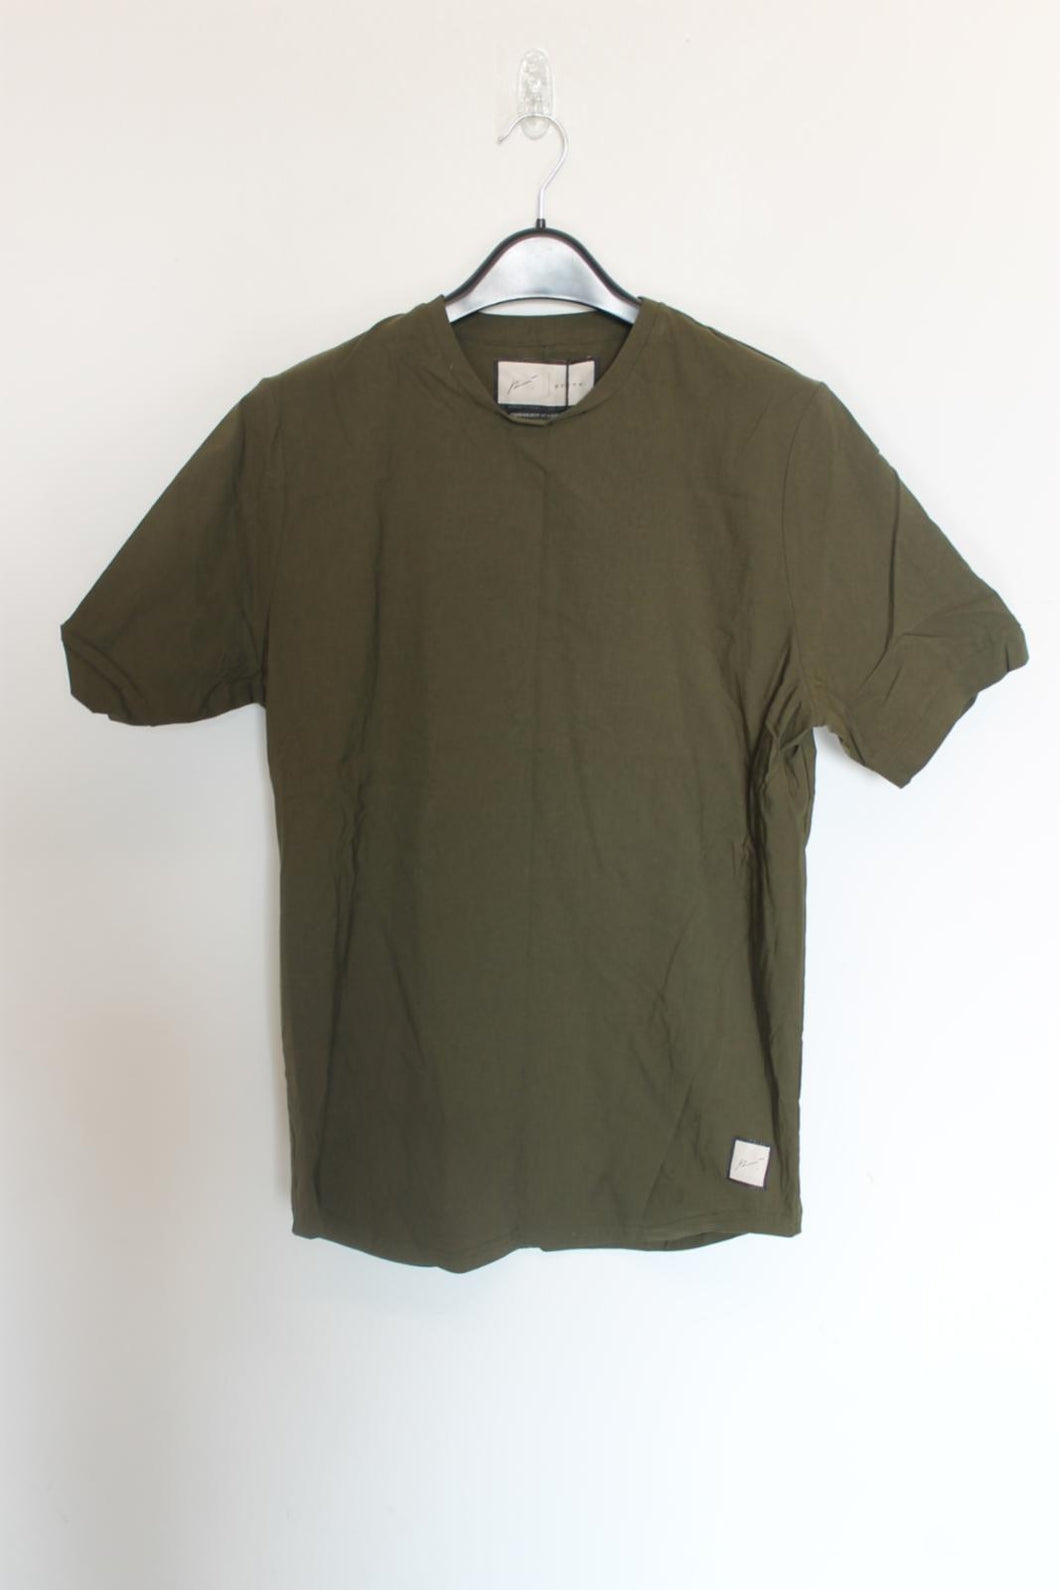 PREVU Men's Khaki Green Salvatore Short Sleeve Crew T-Shirt Top Size XL BNWT